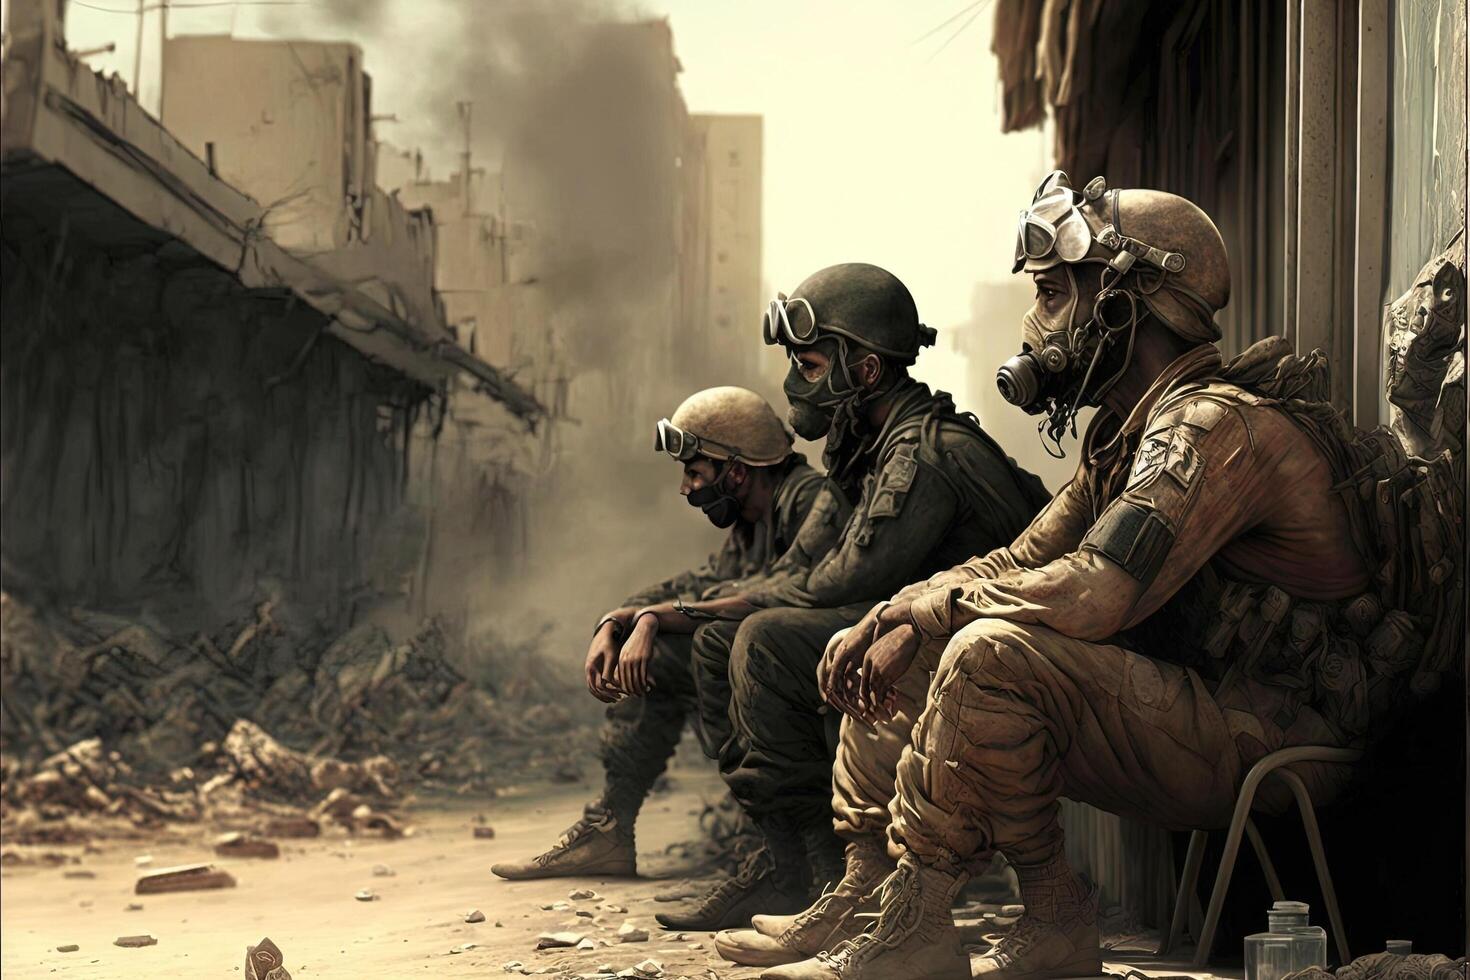 Soldier War in Ukraine explosions on backround illustration photo